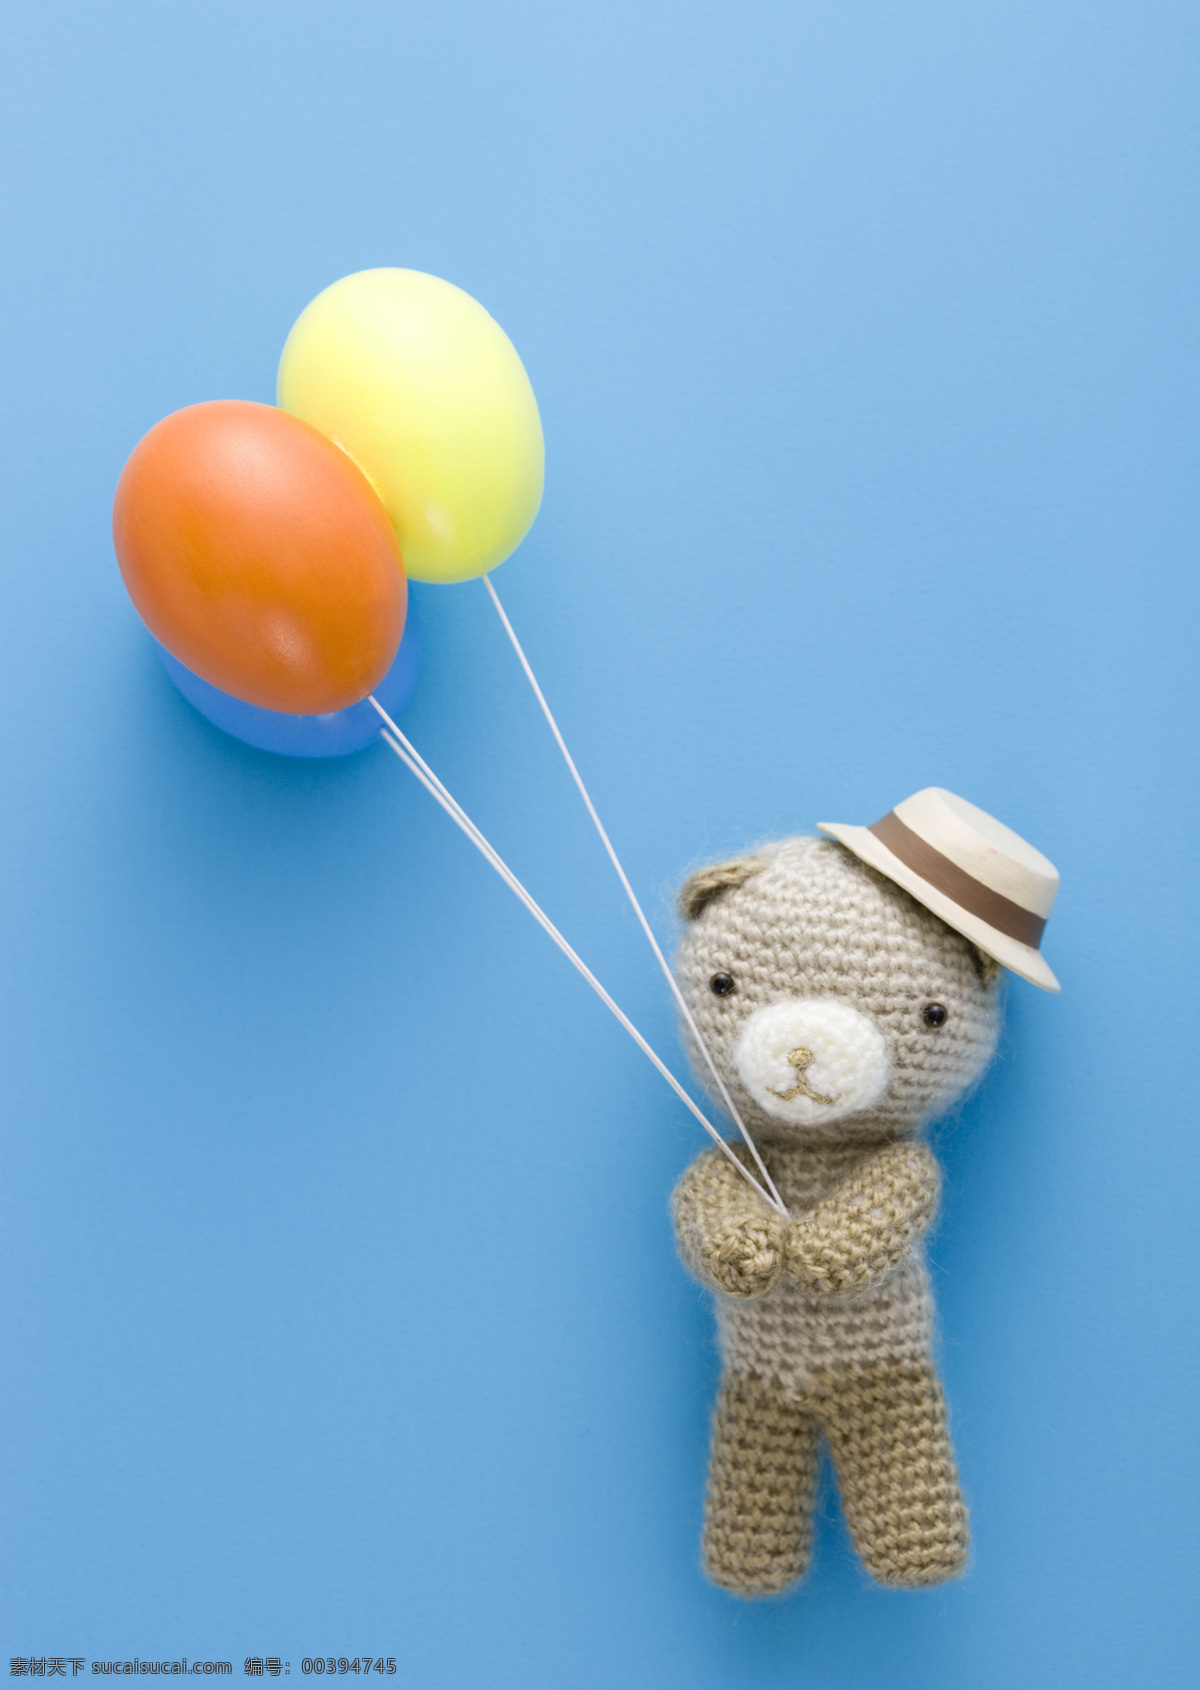 针织礼物 礼物盒 礼物 动物礼物 熊 玩具 气球 针织礼品 其他类别 生活百科 蓝色